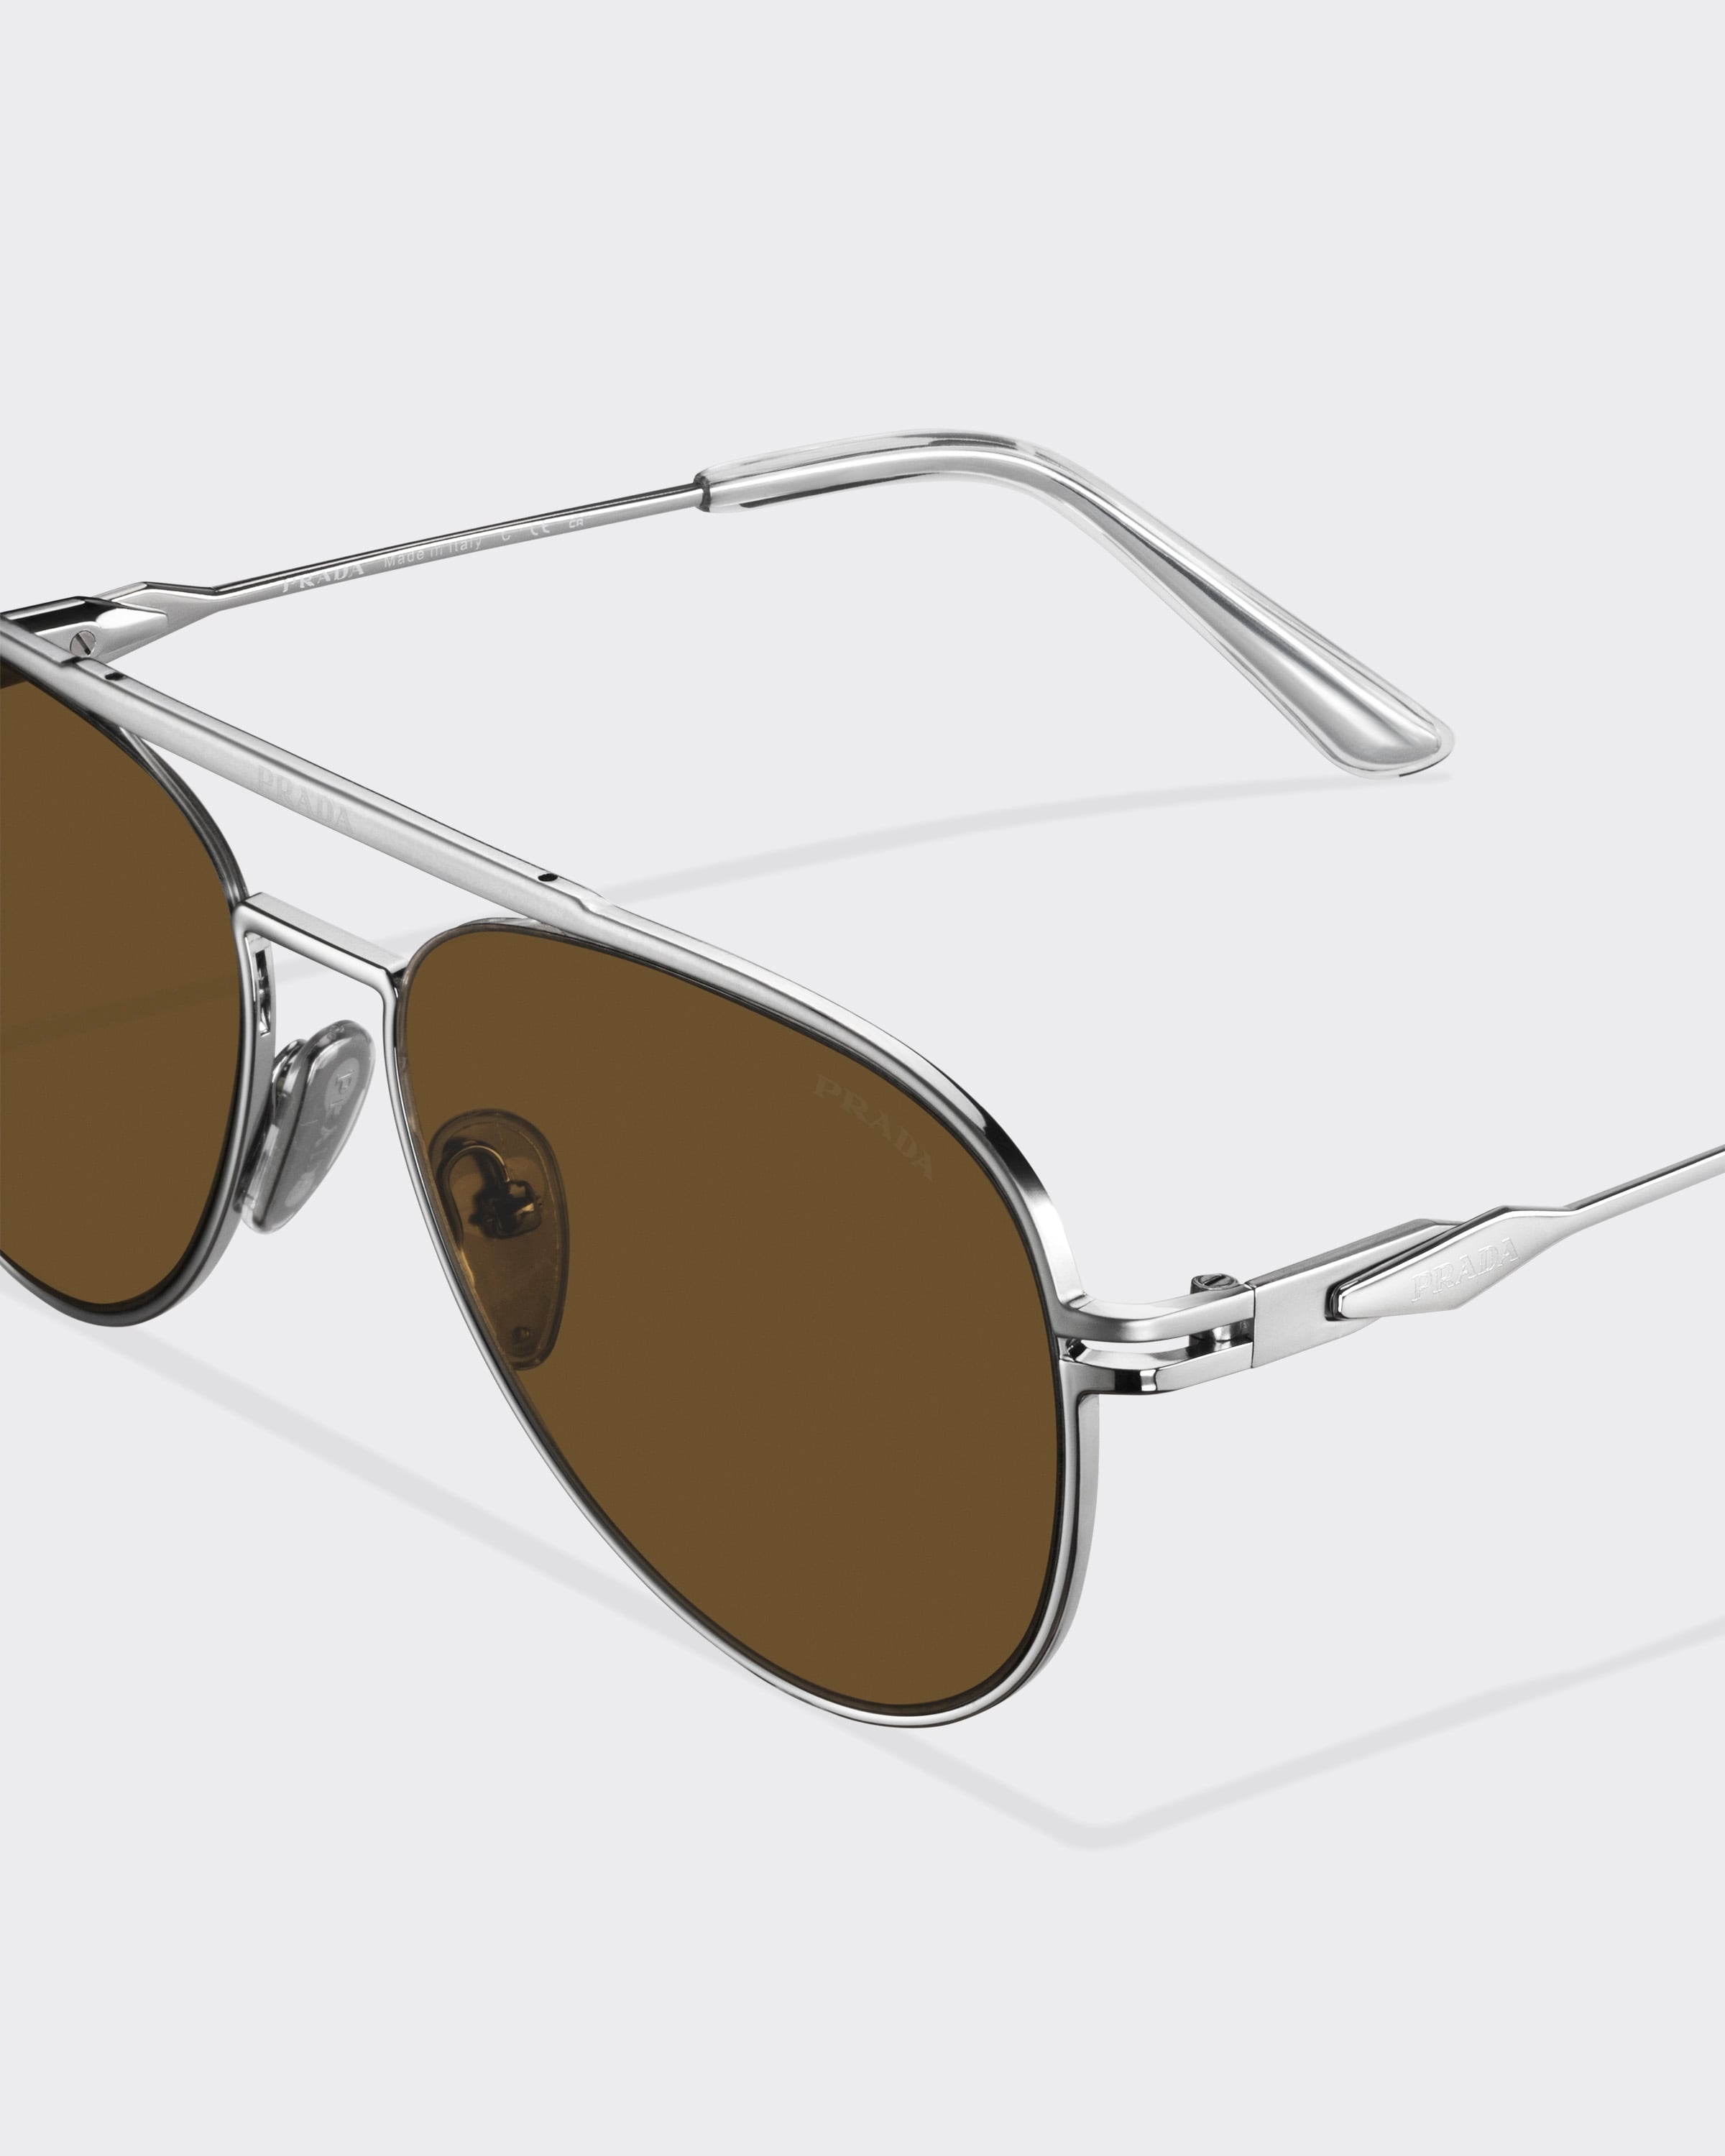 Sunglasses with Prada logo - 5